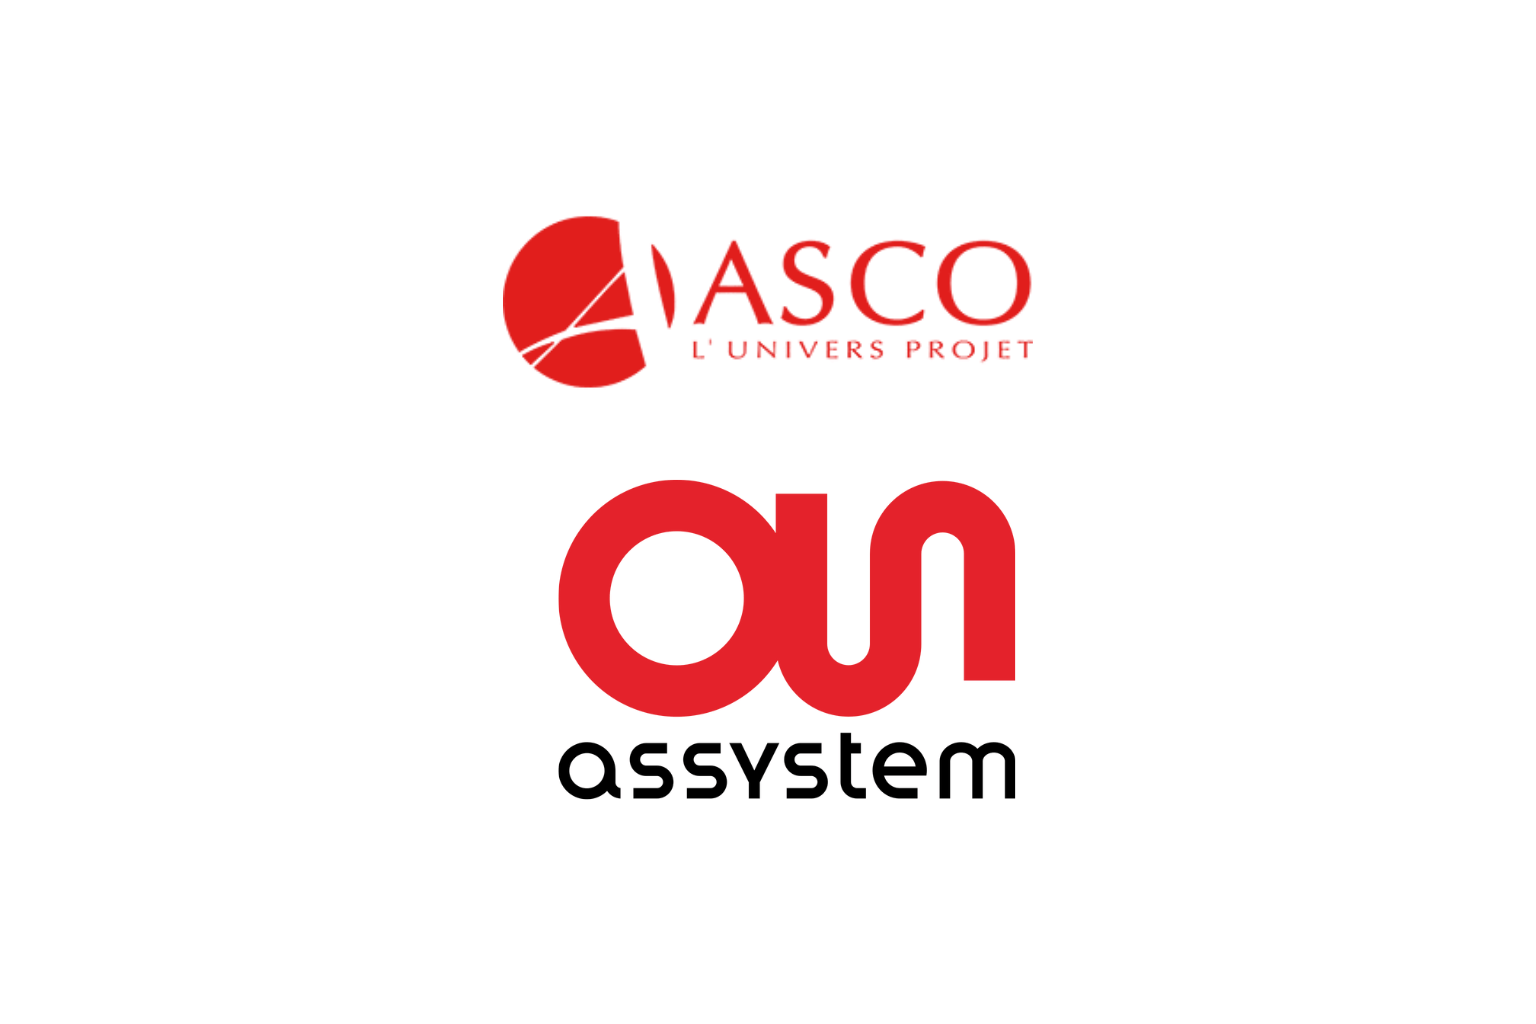 Asco_logo